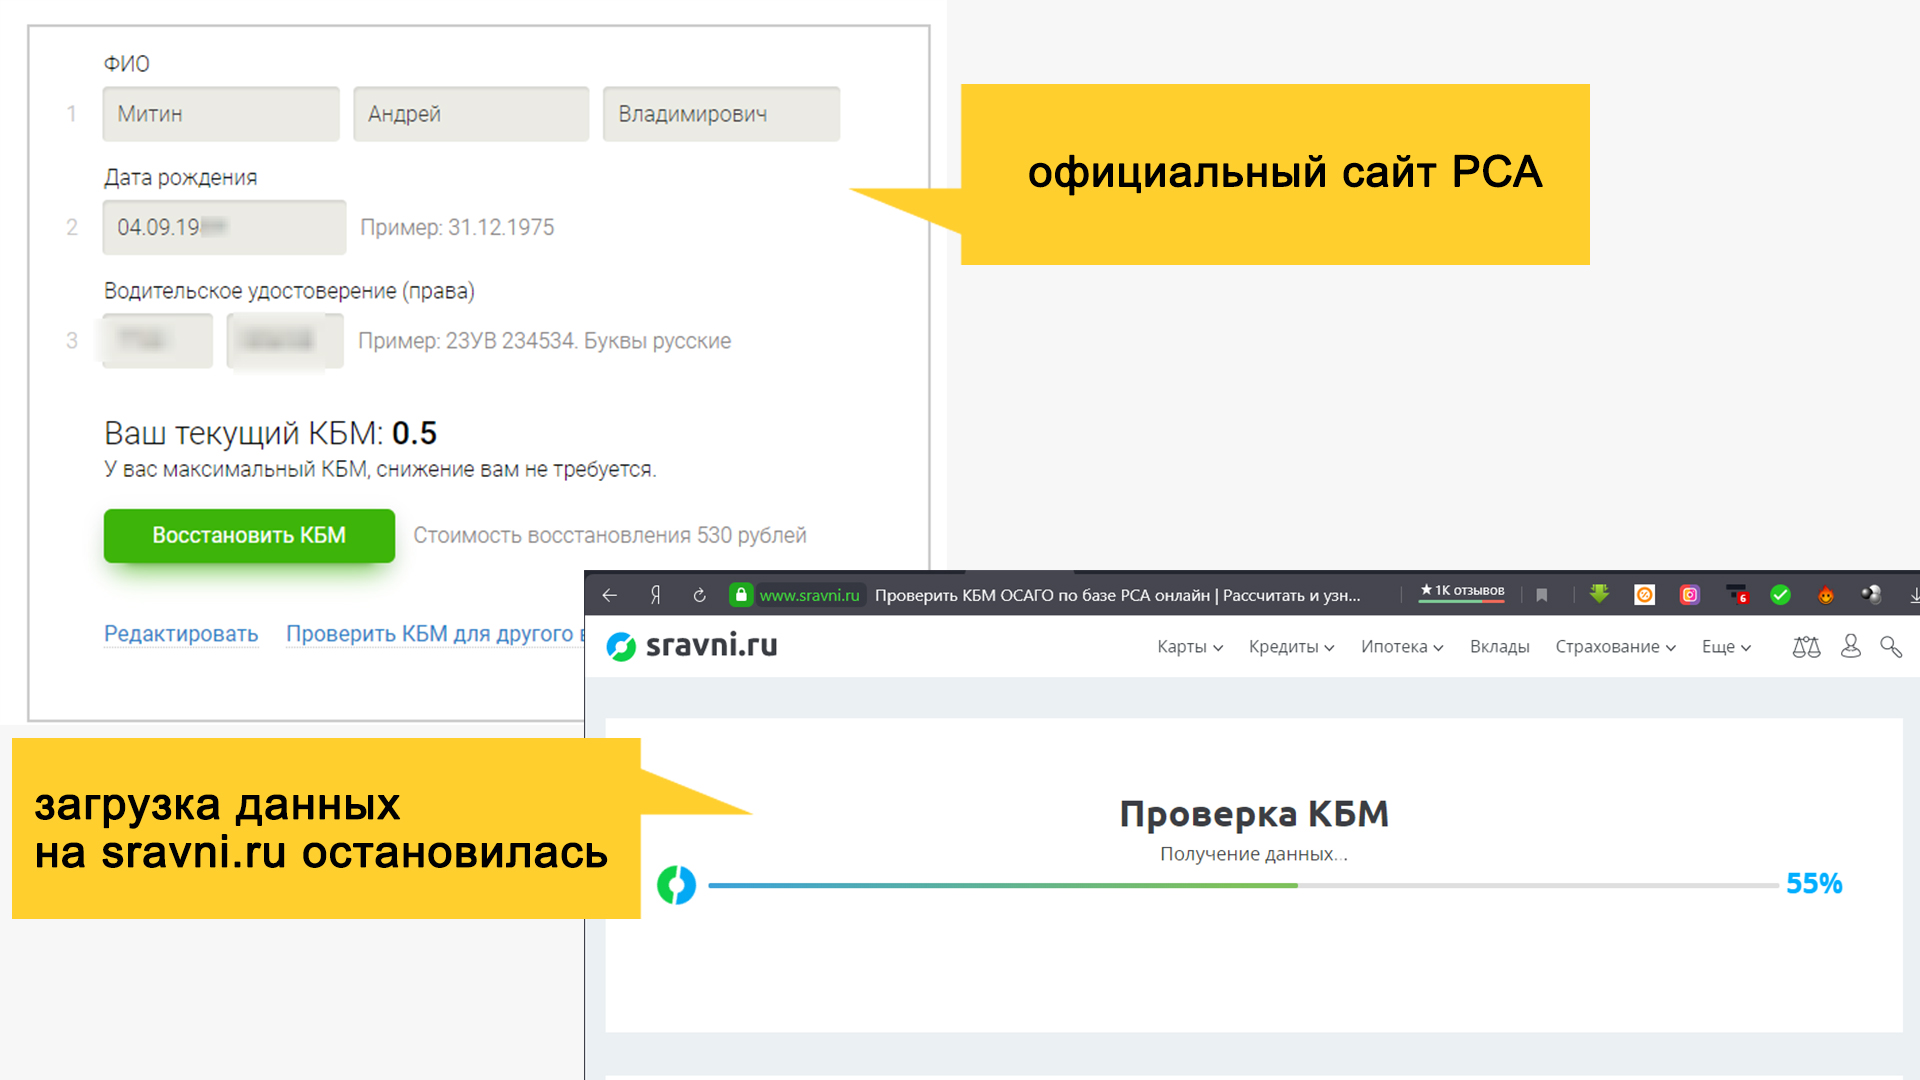 Сервис проверки КБК на сайте sravni.ru не сработал по сравнению с сайтом РСА.